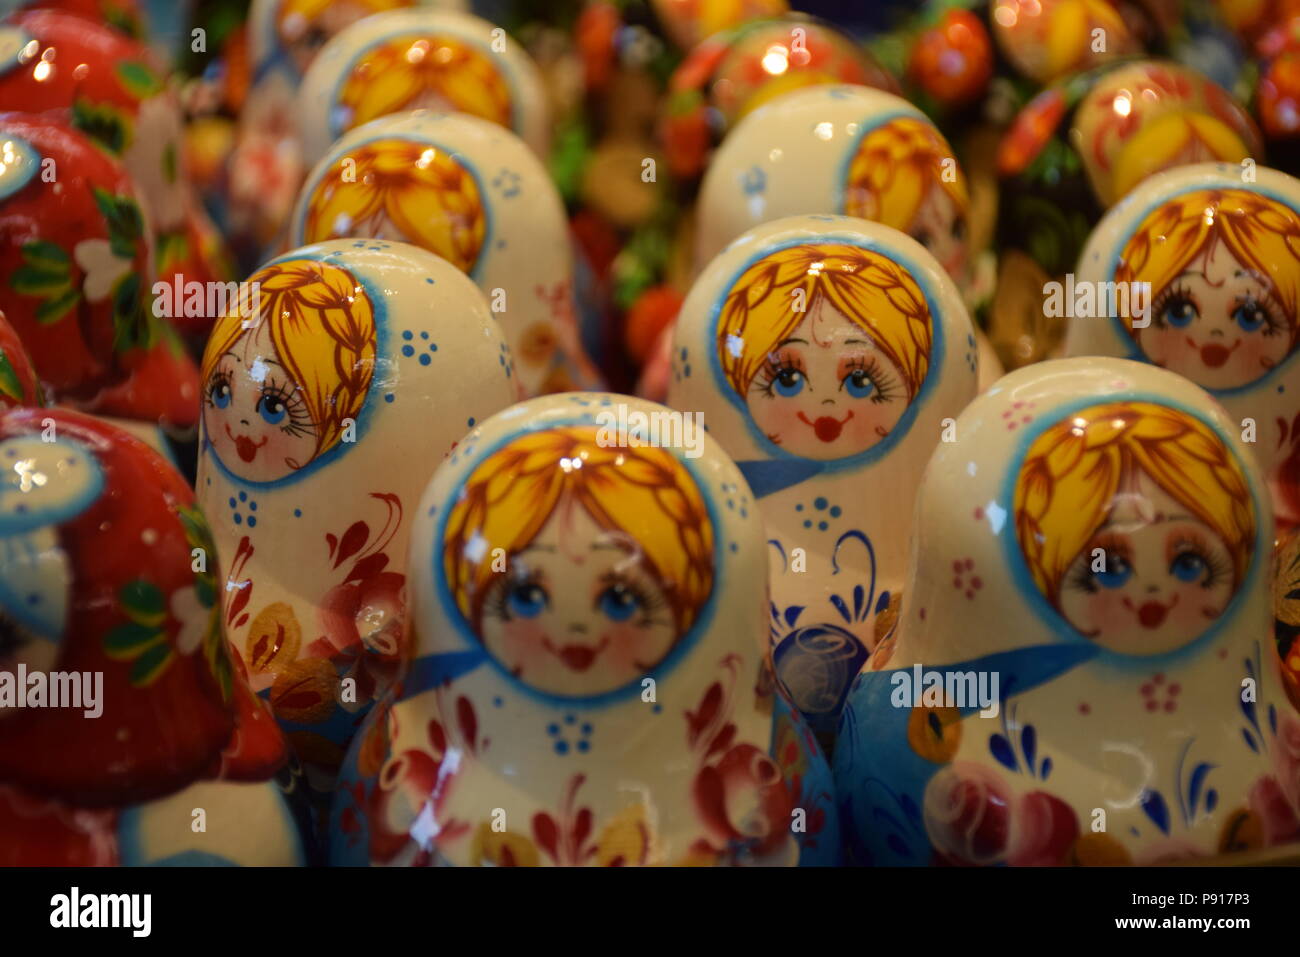 Gruppe von farbigen Matrjoschka Puppen in einem Souvenirshop. Matrjoschka ist ein Satz von Puppen aus Holz mit abnehmender Größe platziert man innerhalb einer anderen Stockfoto